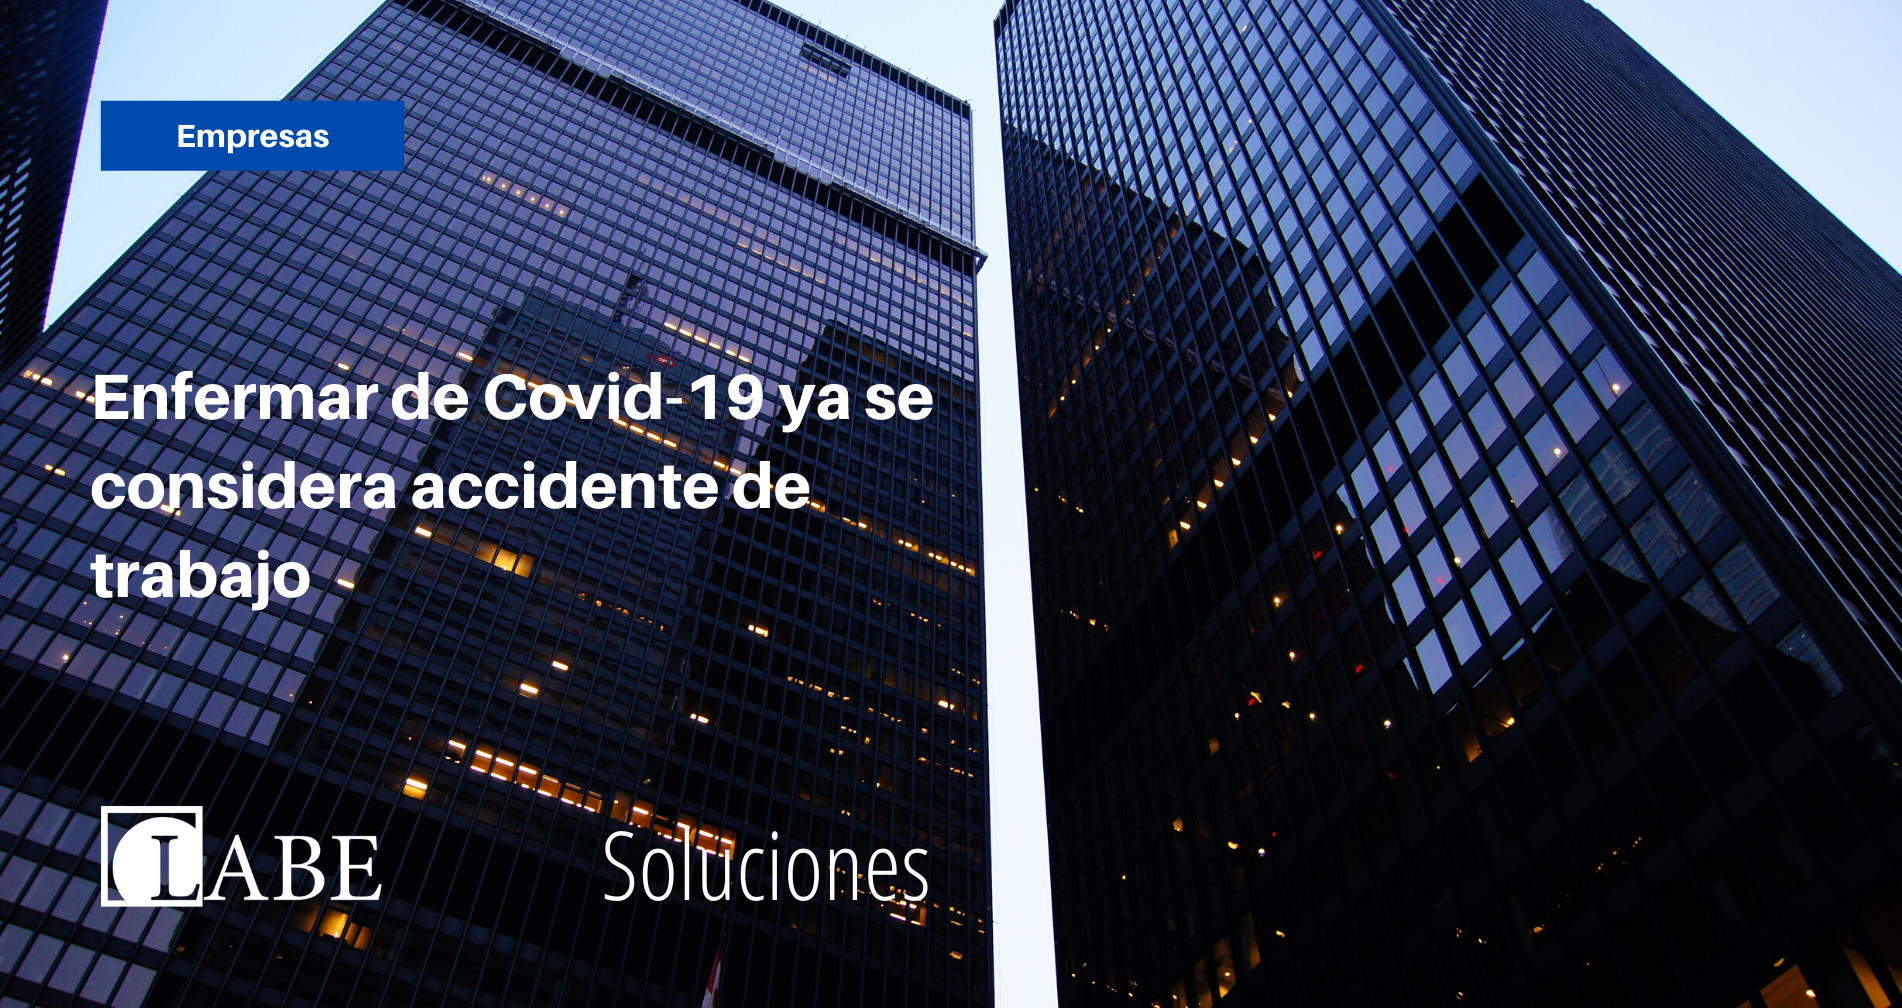 Enfermar de Covid-19 ya se considera accidente de trabajo